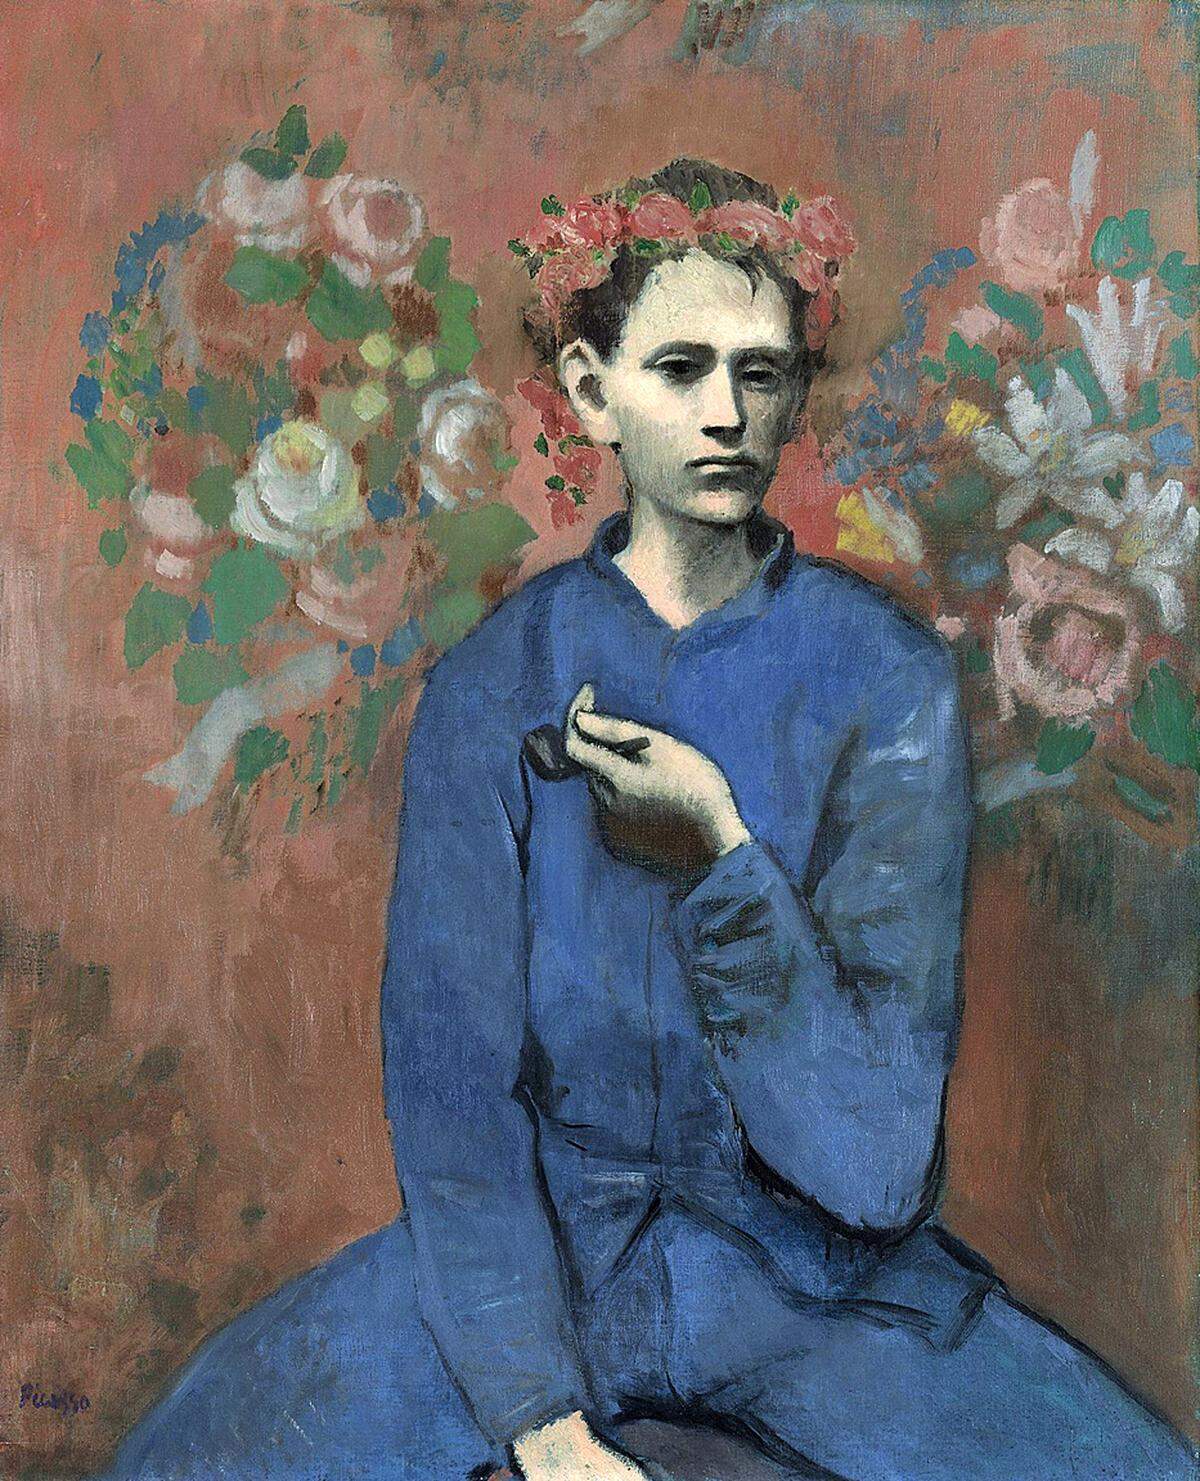 Der "Junge mit Pfeife" von Pablo Picasso wurde im Mai 2004 bei Sotheby’s in New York für über 104 Millionen Dollar verkauft. Das 1905 entstandene Bild markiert den Übergang von Picassos sogenannter Blauen Periode zur Rosa Periode. Als Modell diente dem Künstler P'tit Louis, ein Handwerker, der Picasso gerne zuschaute.